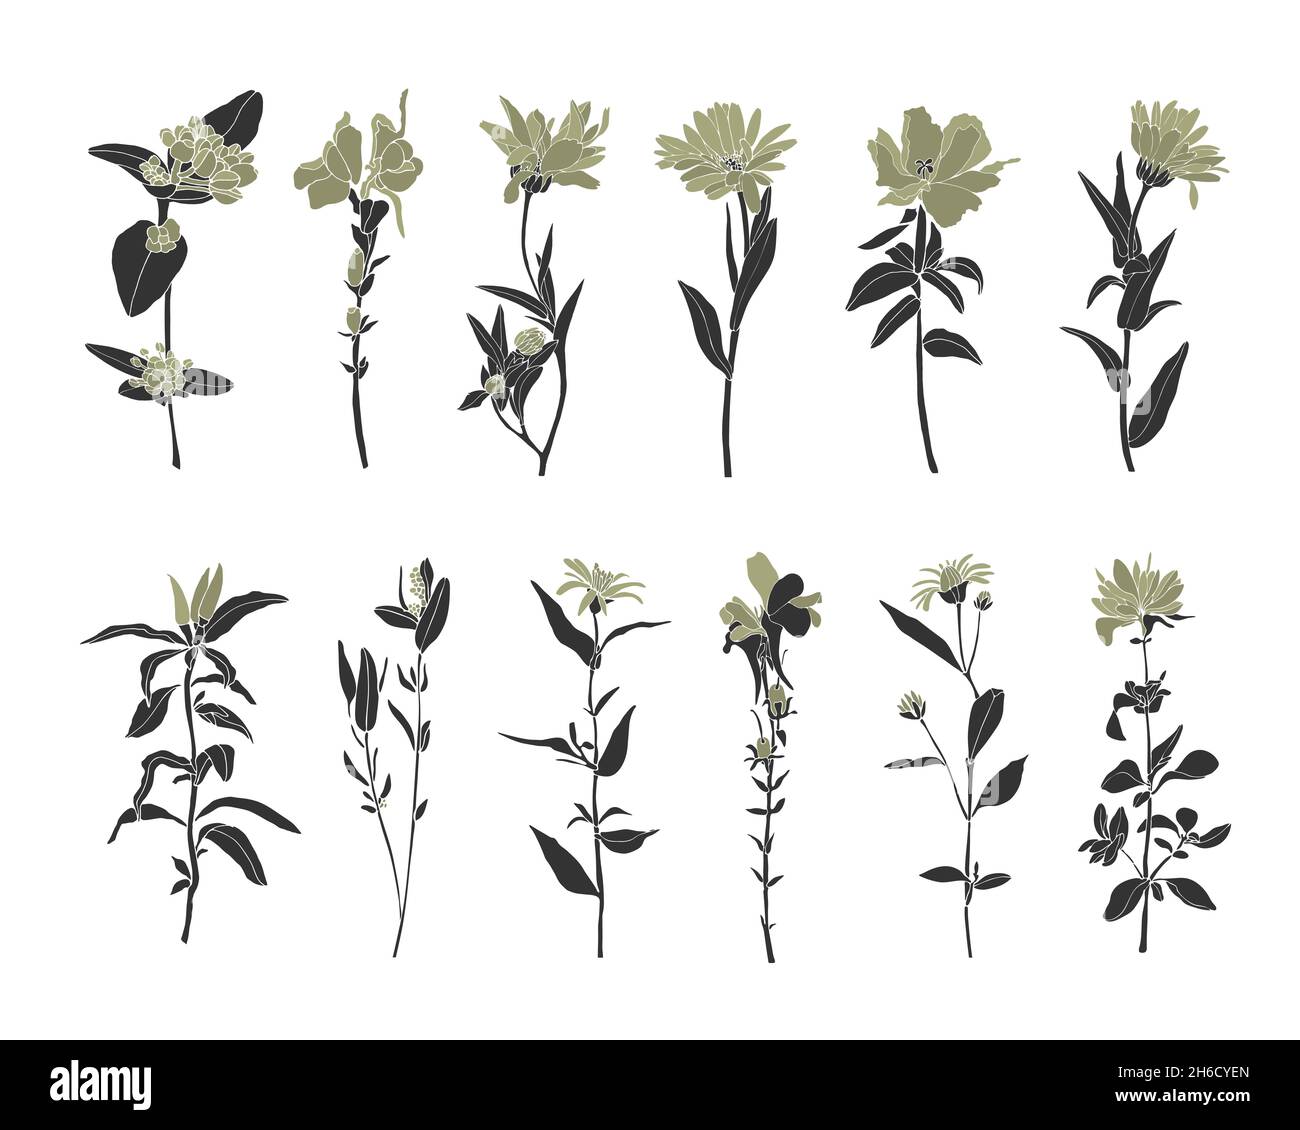 Vektor-Set von Wildblumen. Wunderschöne Blüten mit dunkelgrauen Stielen, Zweigen und olivfarbenen Blütenblättern. Stock Vektor